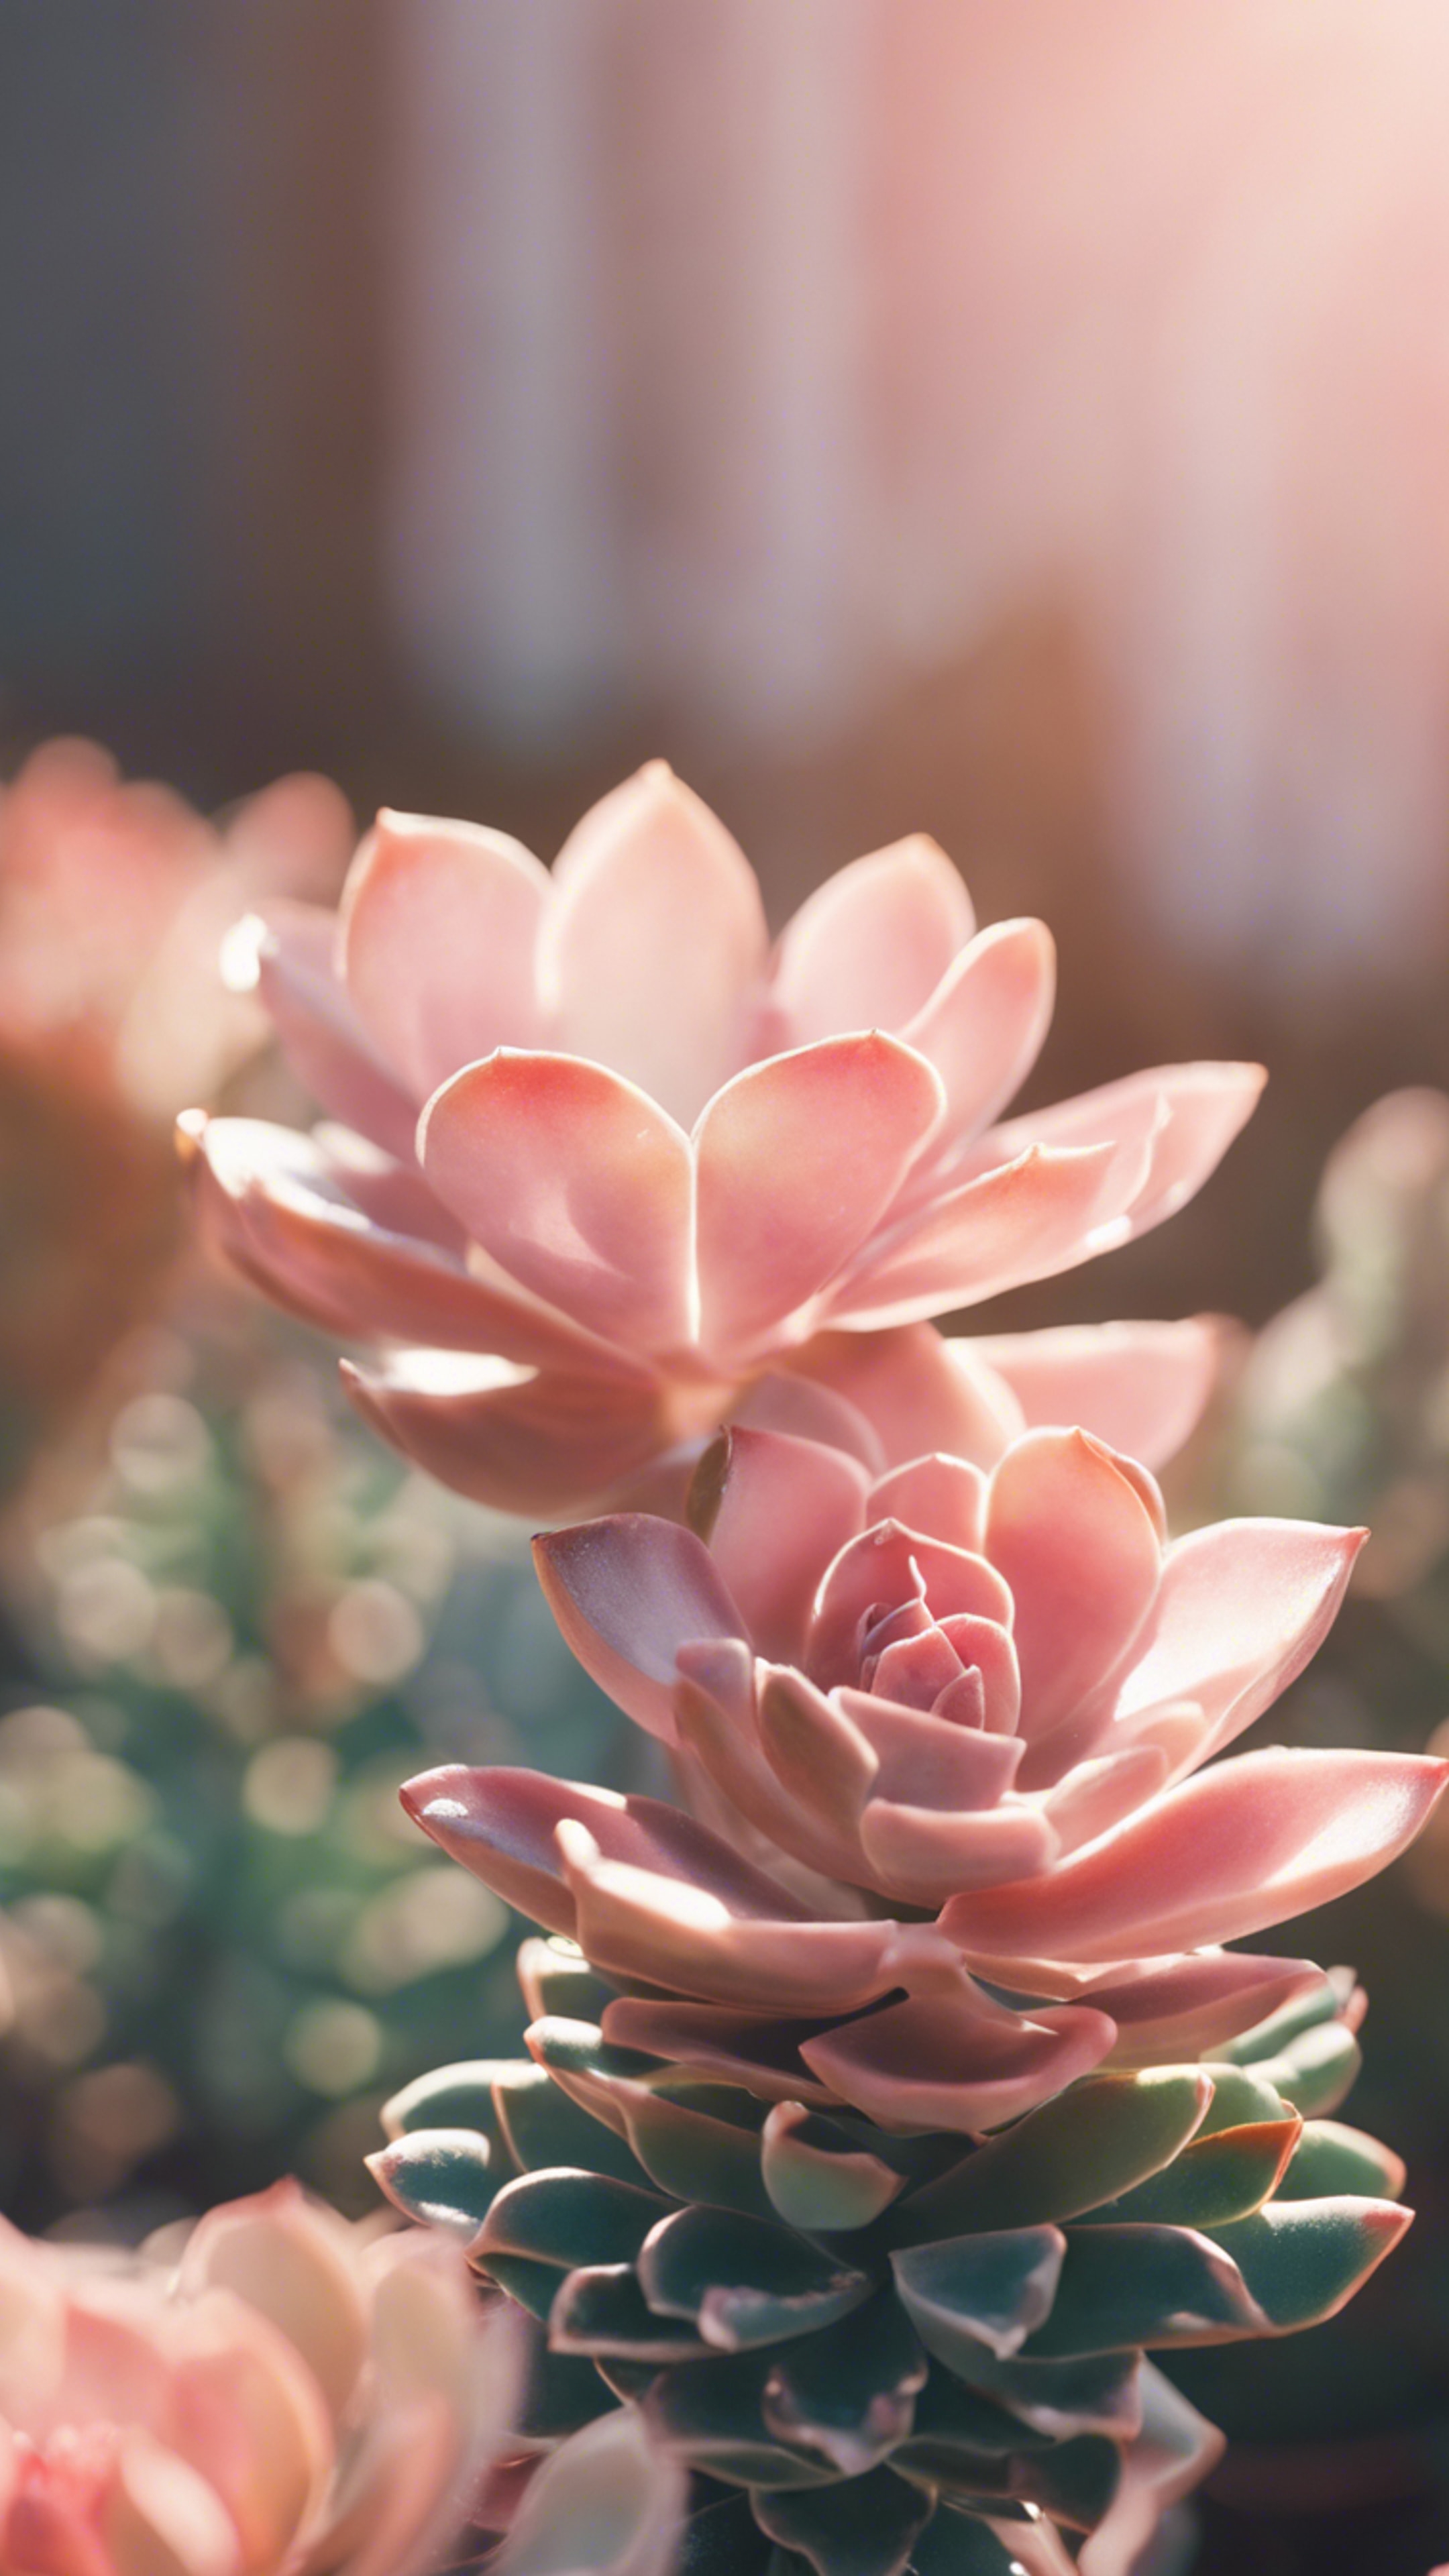 A close-up view of a preppy pastel pink succulent plant bathed in gentle morning sunshine. Papel de parede[96679d4148894c129b05]